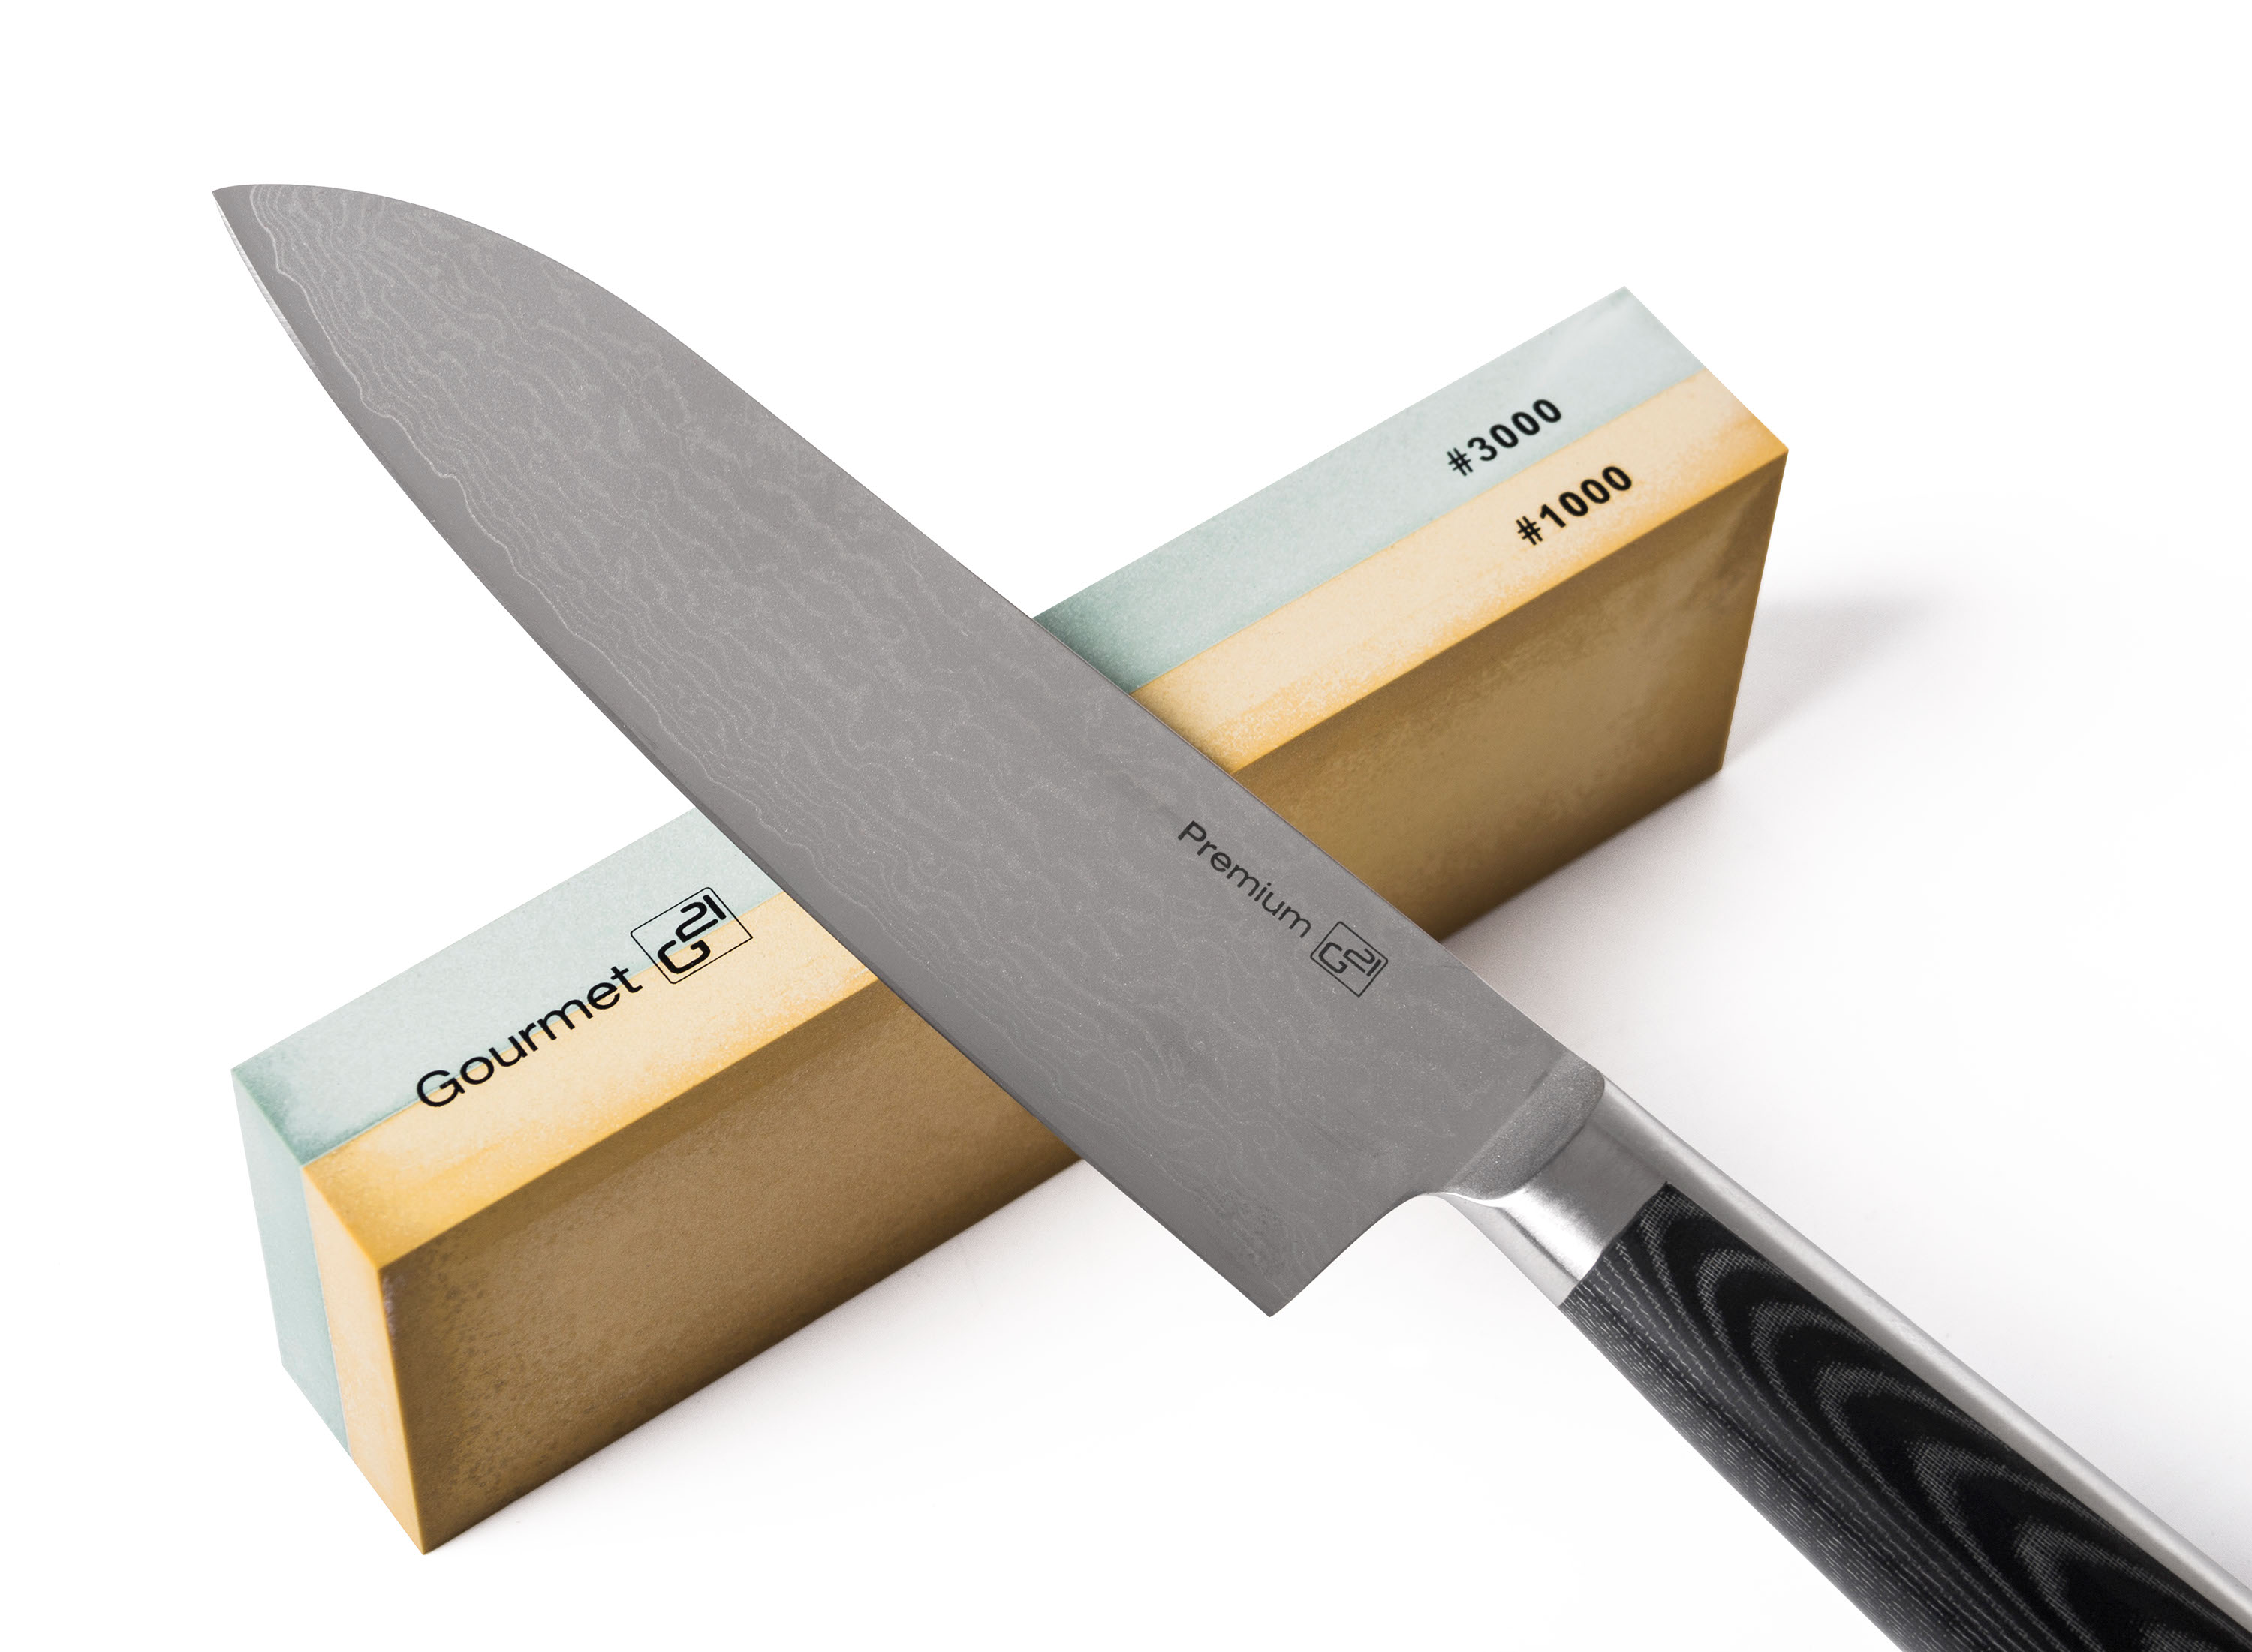 Obrázek galerie pro produkt G21 Damascus Premium + AKCE%, Sada nožů v bambusovém bloku, Box, 5 ks + brusný kámen